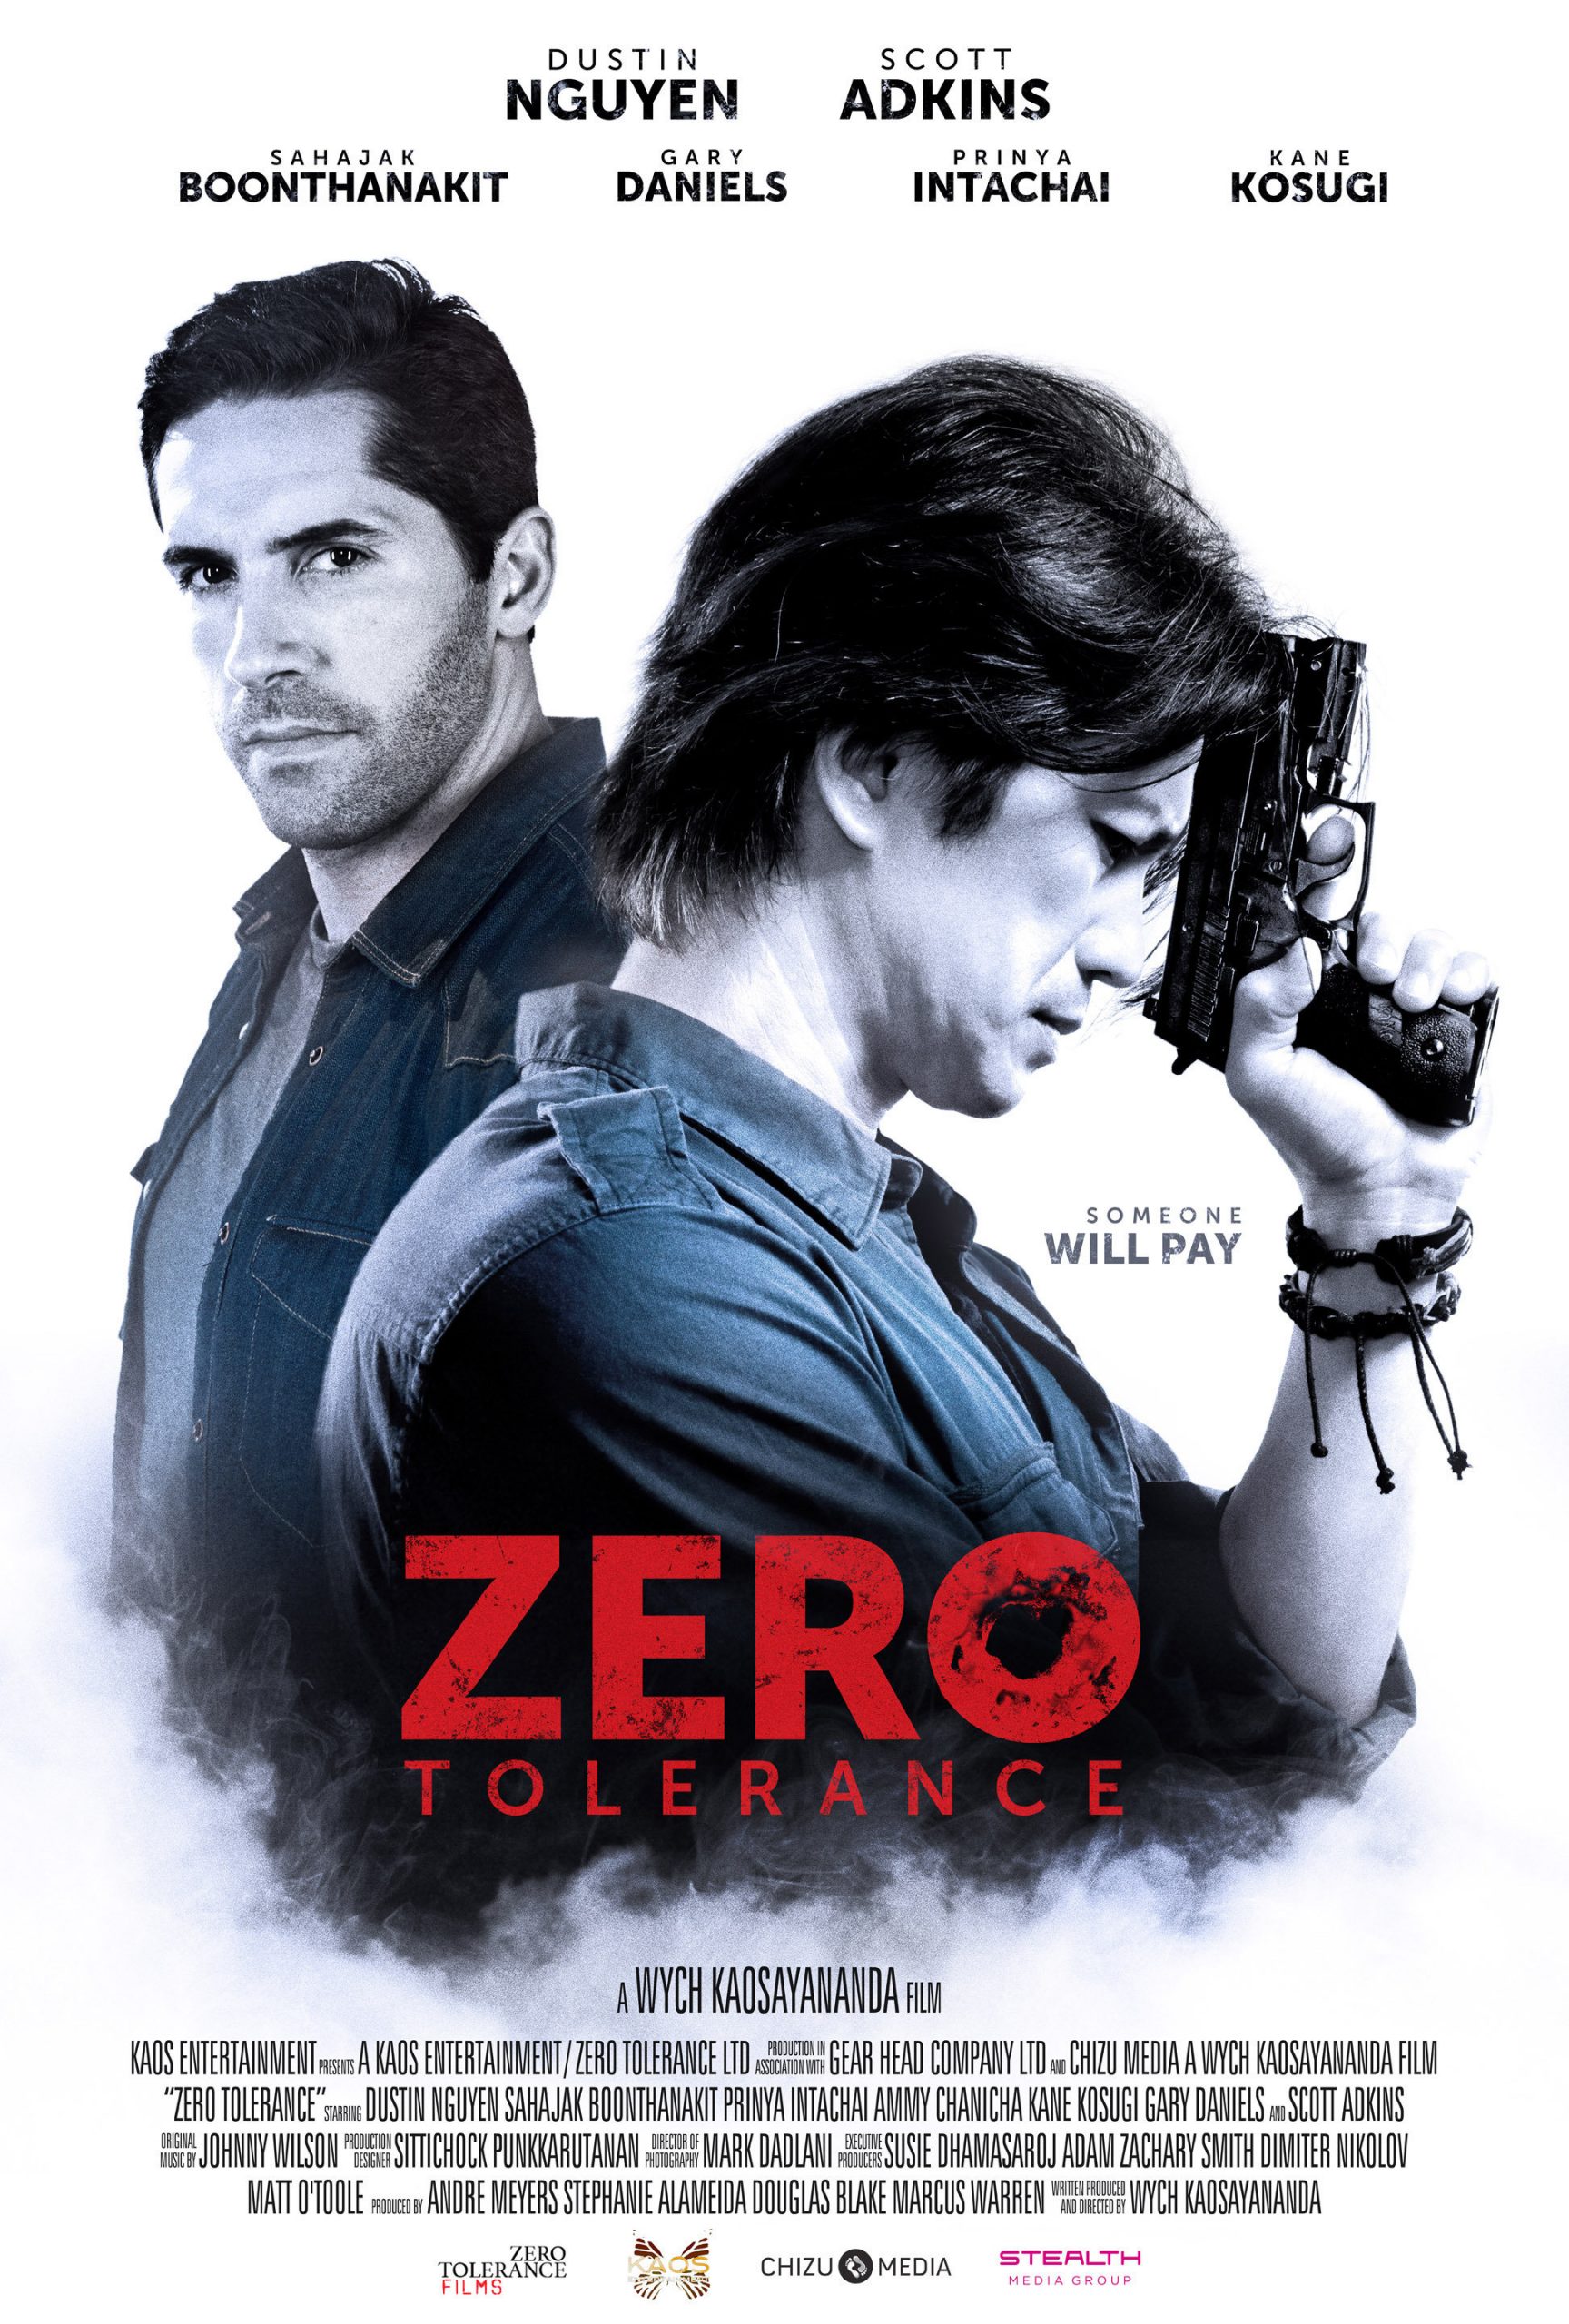 ดูหนังออนไลน์HD Zero Tolerance (2015) ปิดกรุงเทพล่าอำมหิต หนังเต็มเรื่อง หนังมาสเตอร์ ดูหนังHD ดูหนังออนไลน์ ดูหนังใหม่